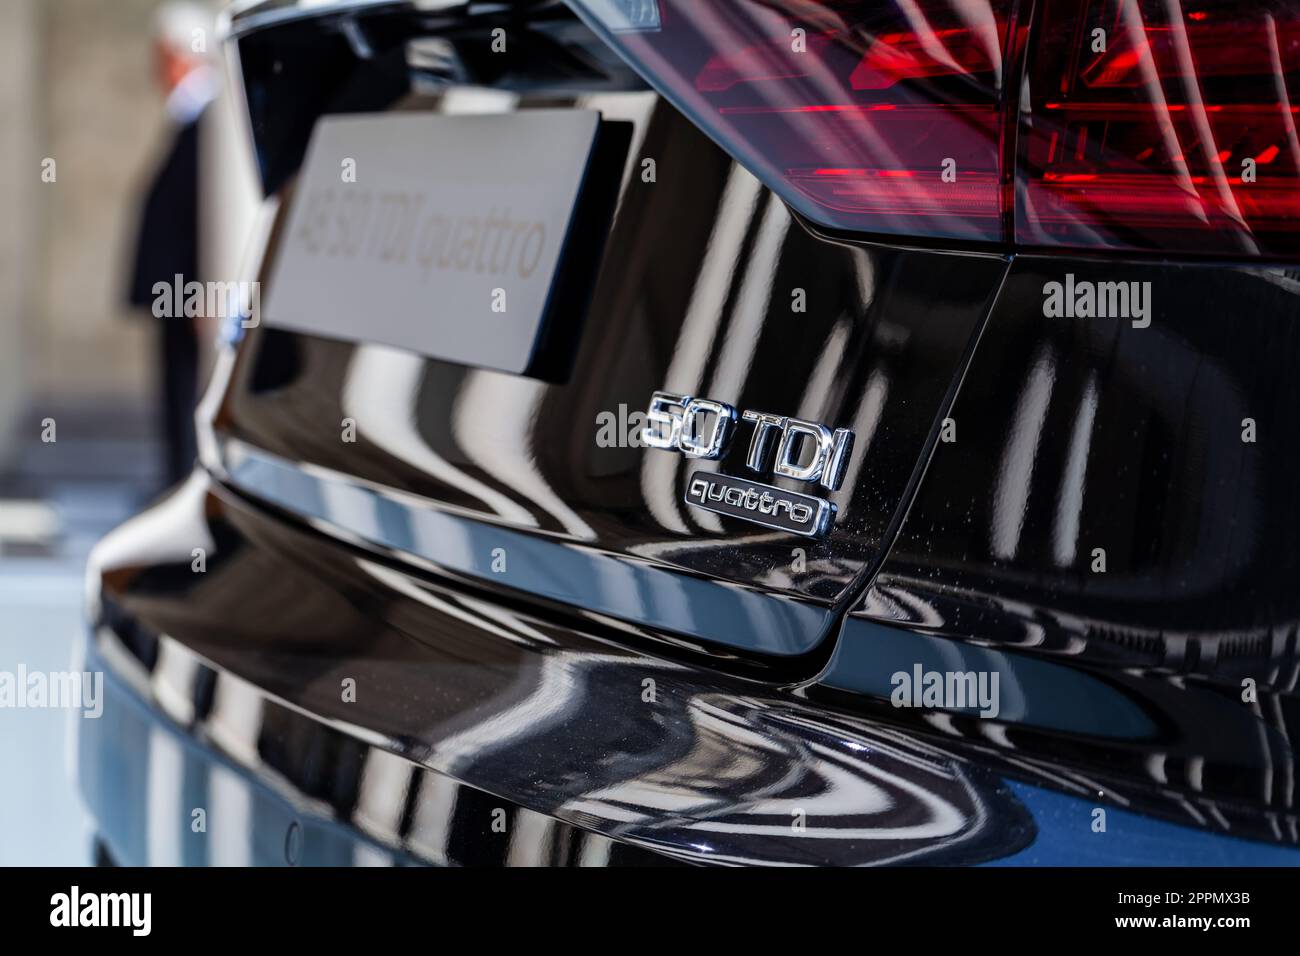 MILAN, ITALIE - AVRIL 16 2018 : Audi City LAB. Vue rapprochée de l'arrière d'une Audi A8 noire avec plaque d'immatriculation et feux de signalisation. Banque D'Images